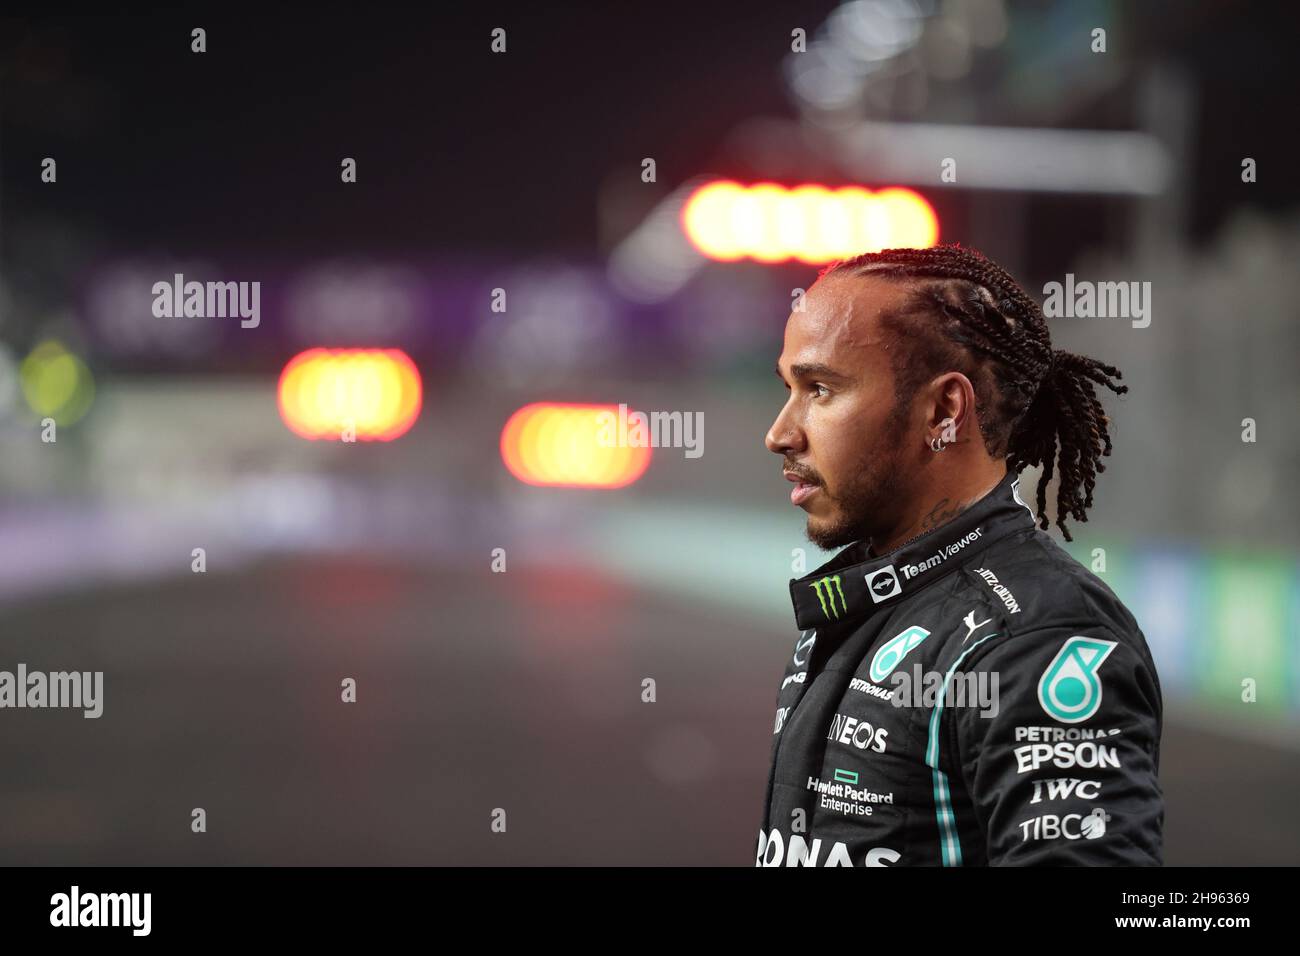 Le gardien de mât Lewis Hamilton (GBR) Mercedes AMG F1 dans le parc ferme qualifiant.04.12.2021. Championnat du monde de Formule 1, Rd 21, Grand Prix d'Arabie Saoudite, Jeddah, Arabie Saoudite, Journée de qualification.Le crédit photo doit être lu : images XPB/Press Association. Banque D'Images